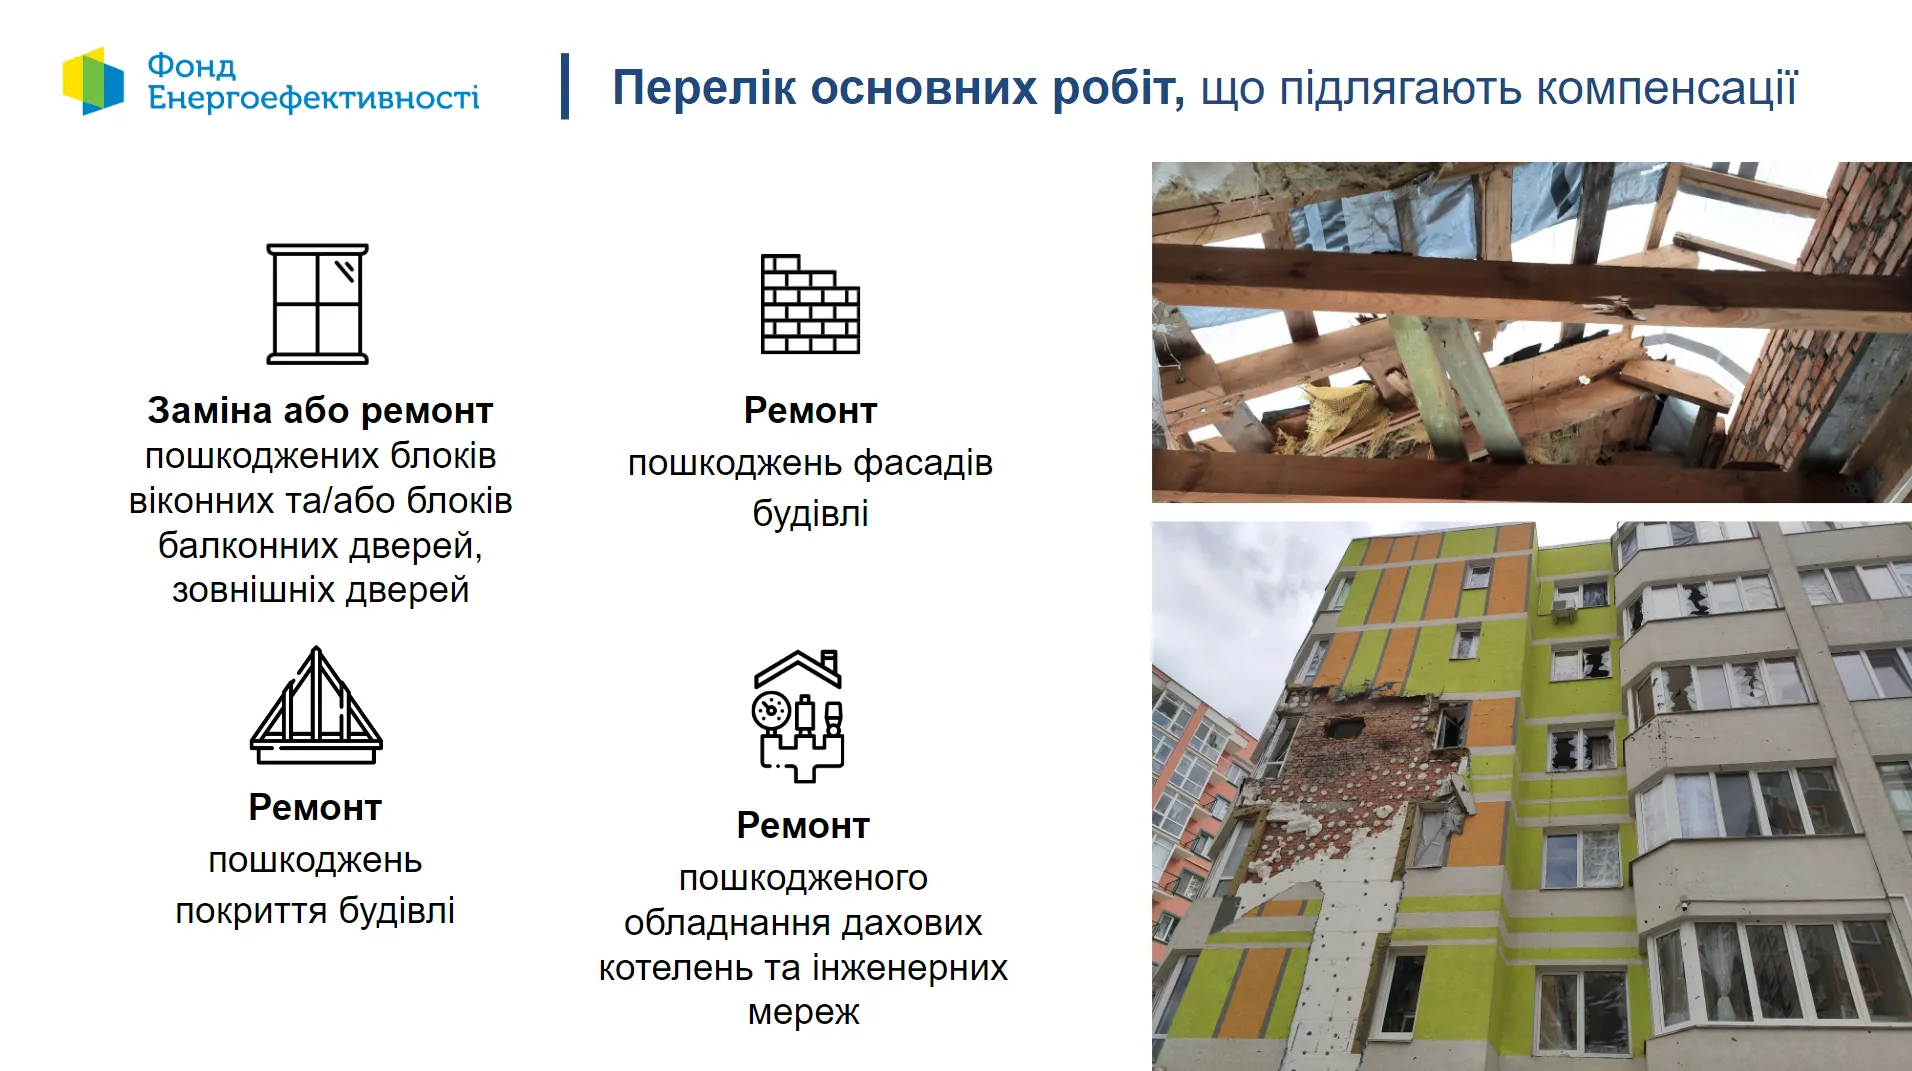 ЄС виділив 5 мільйонів євро на відновлення пошкодженого житла в Україні 